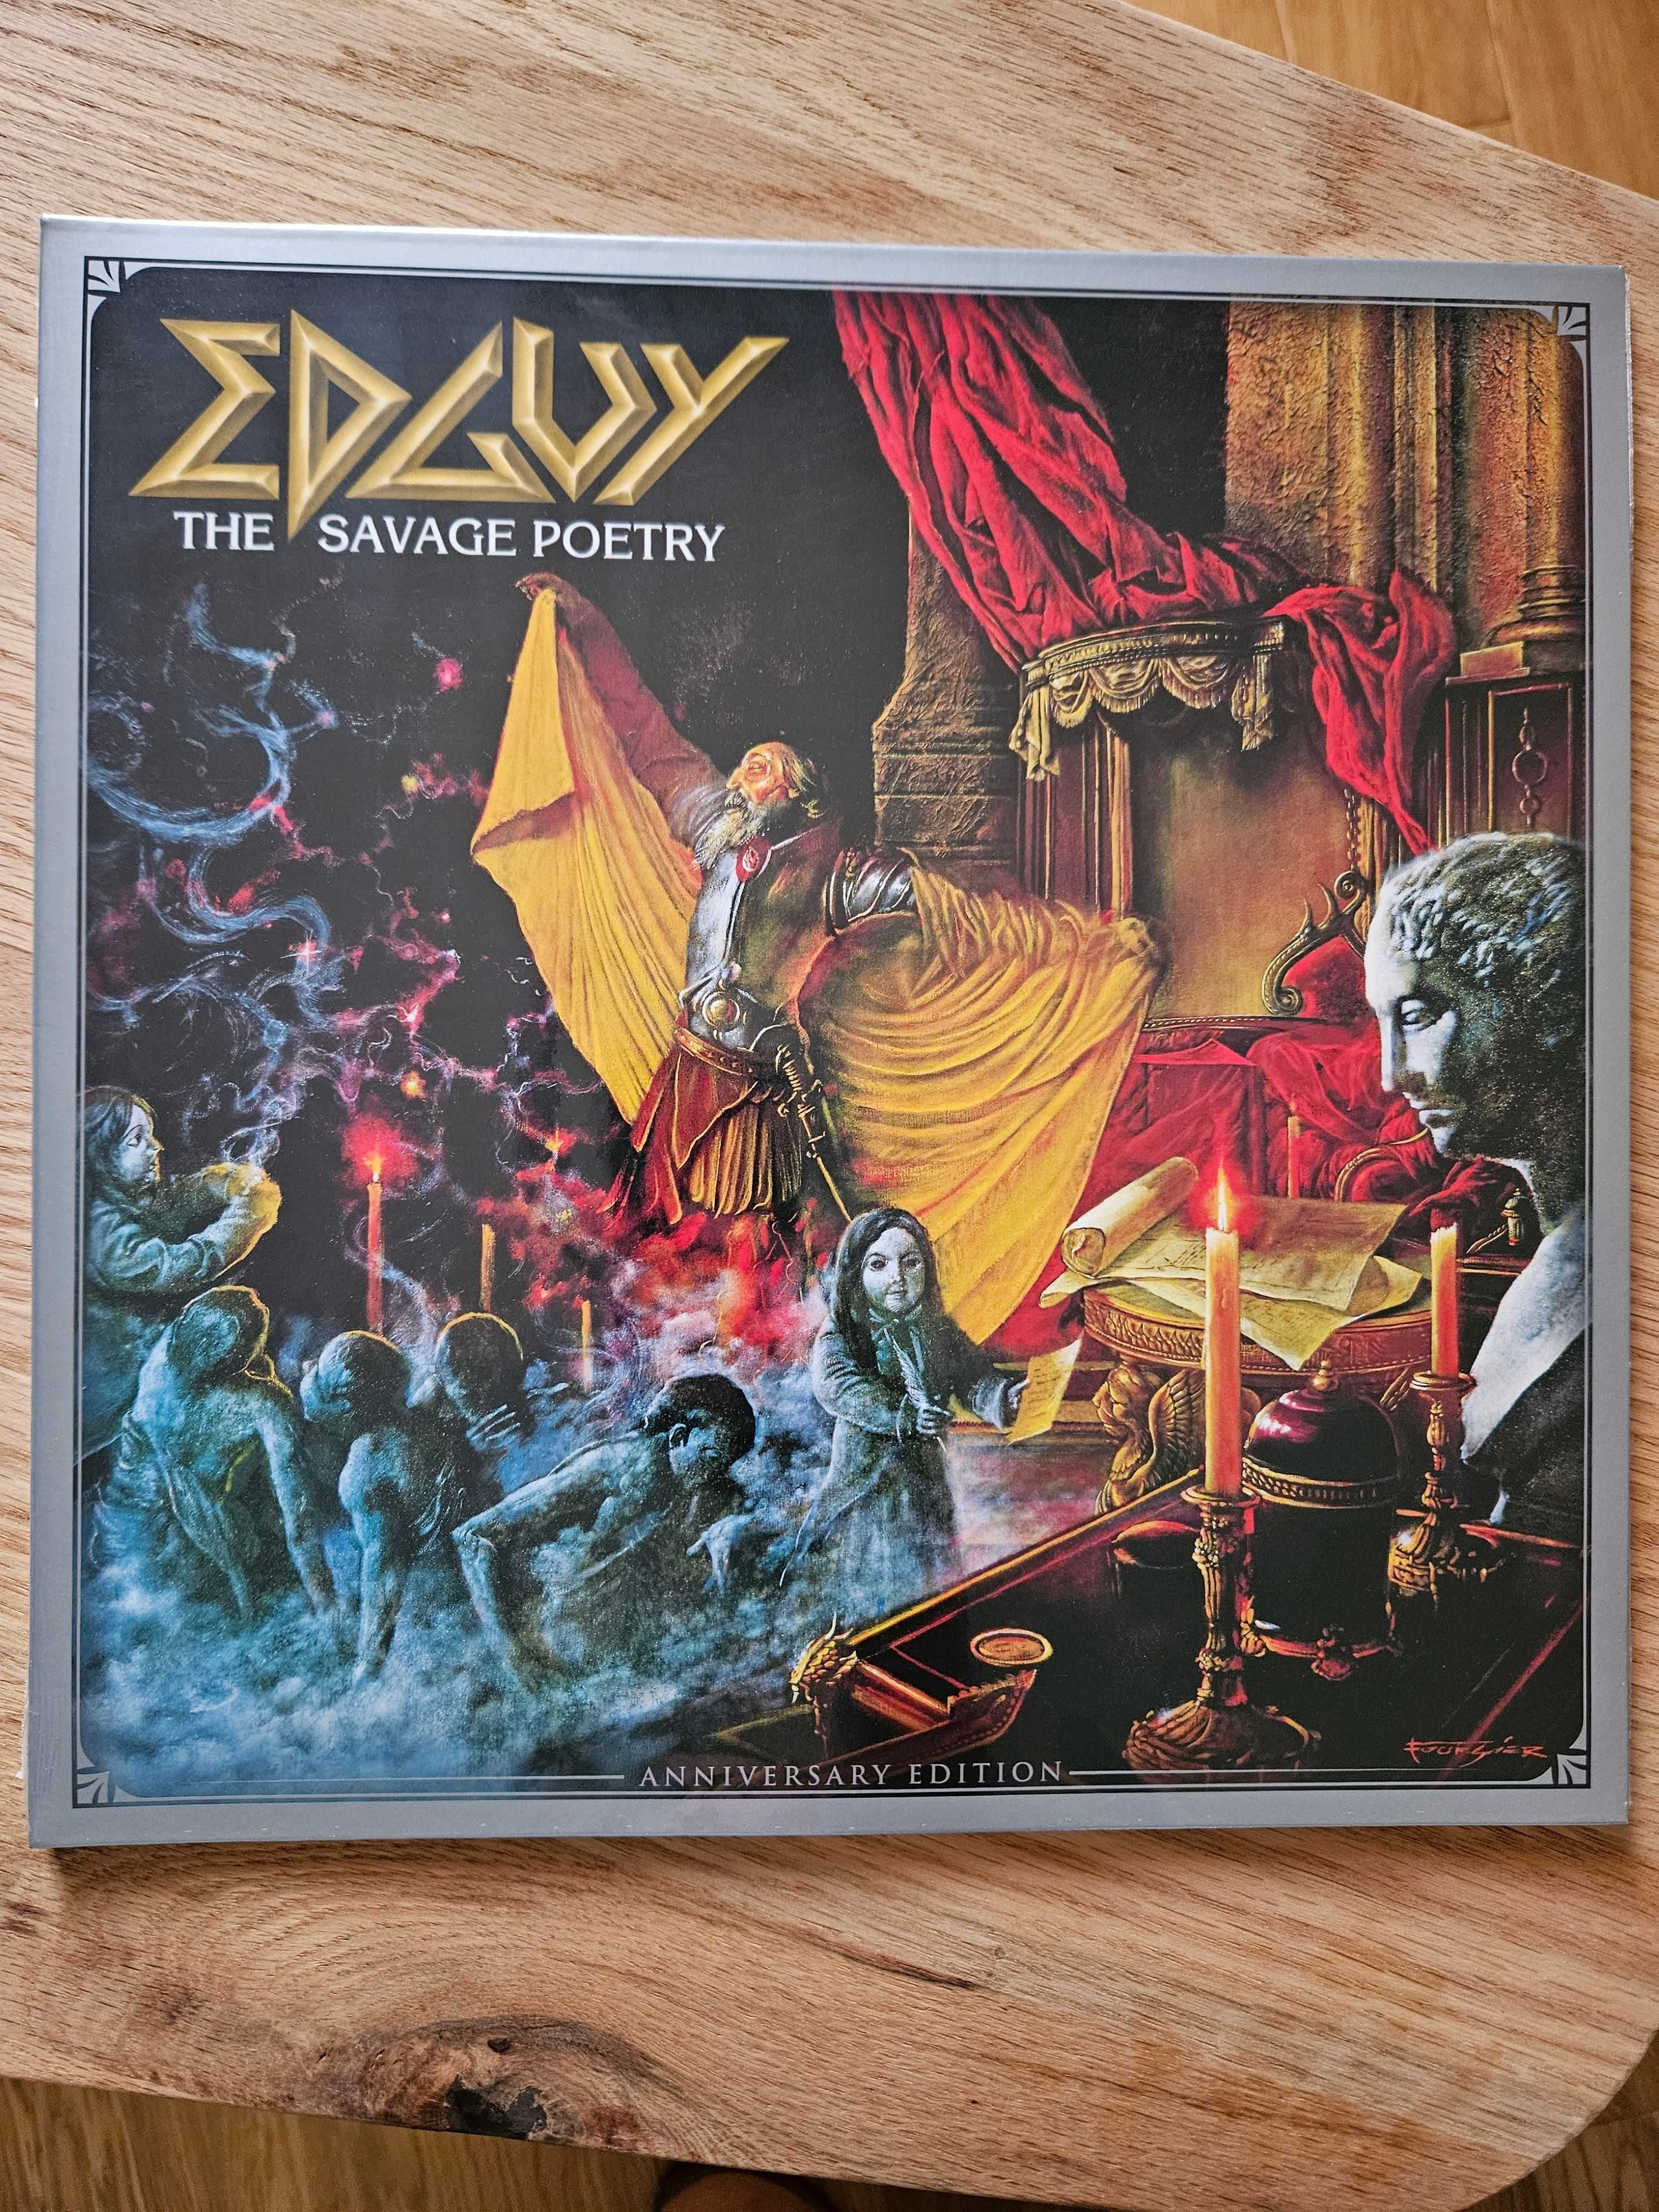 Edguy: The Savage Poetry (2000/2022) (LP / Clear Vinyl)